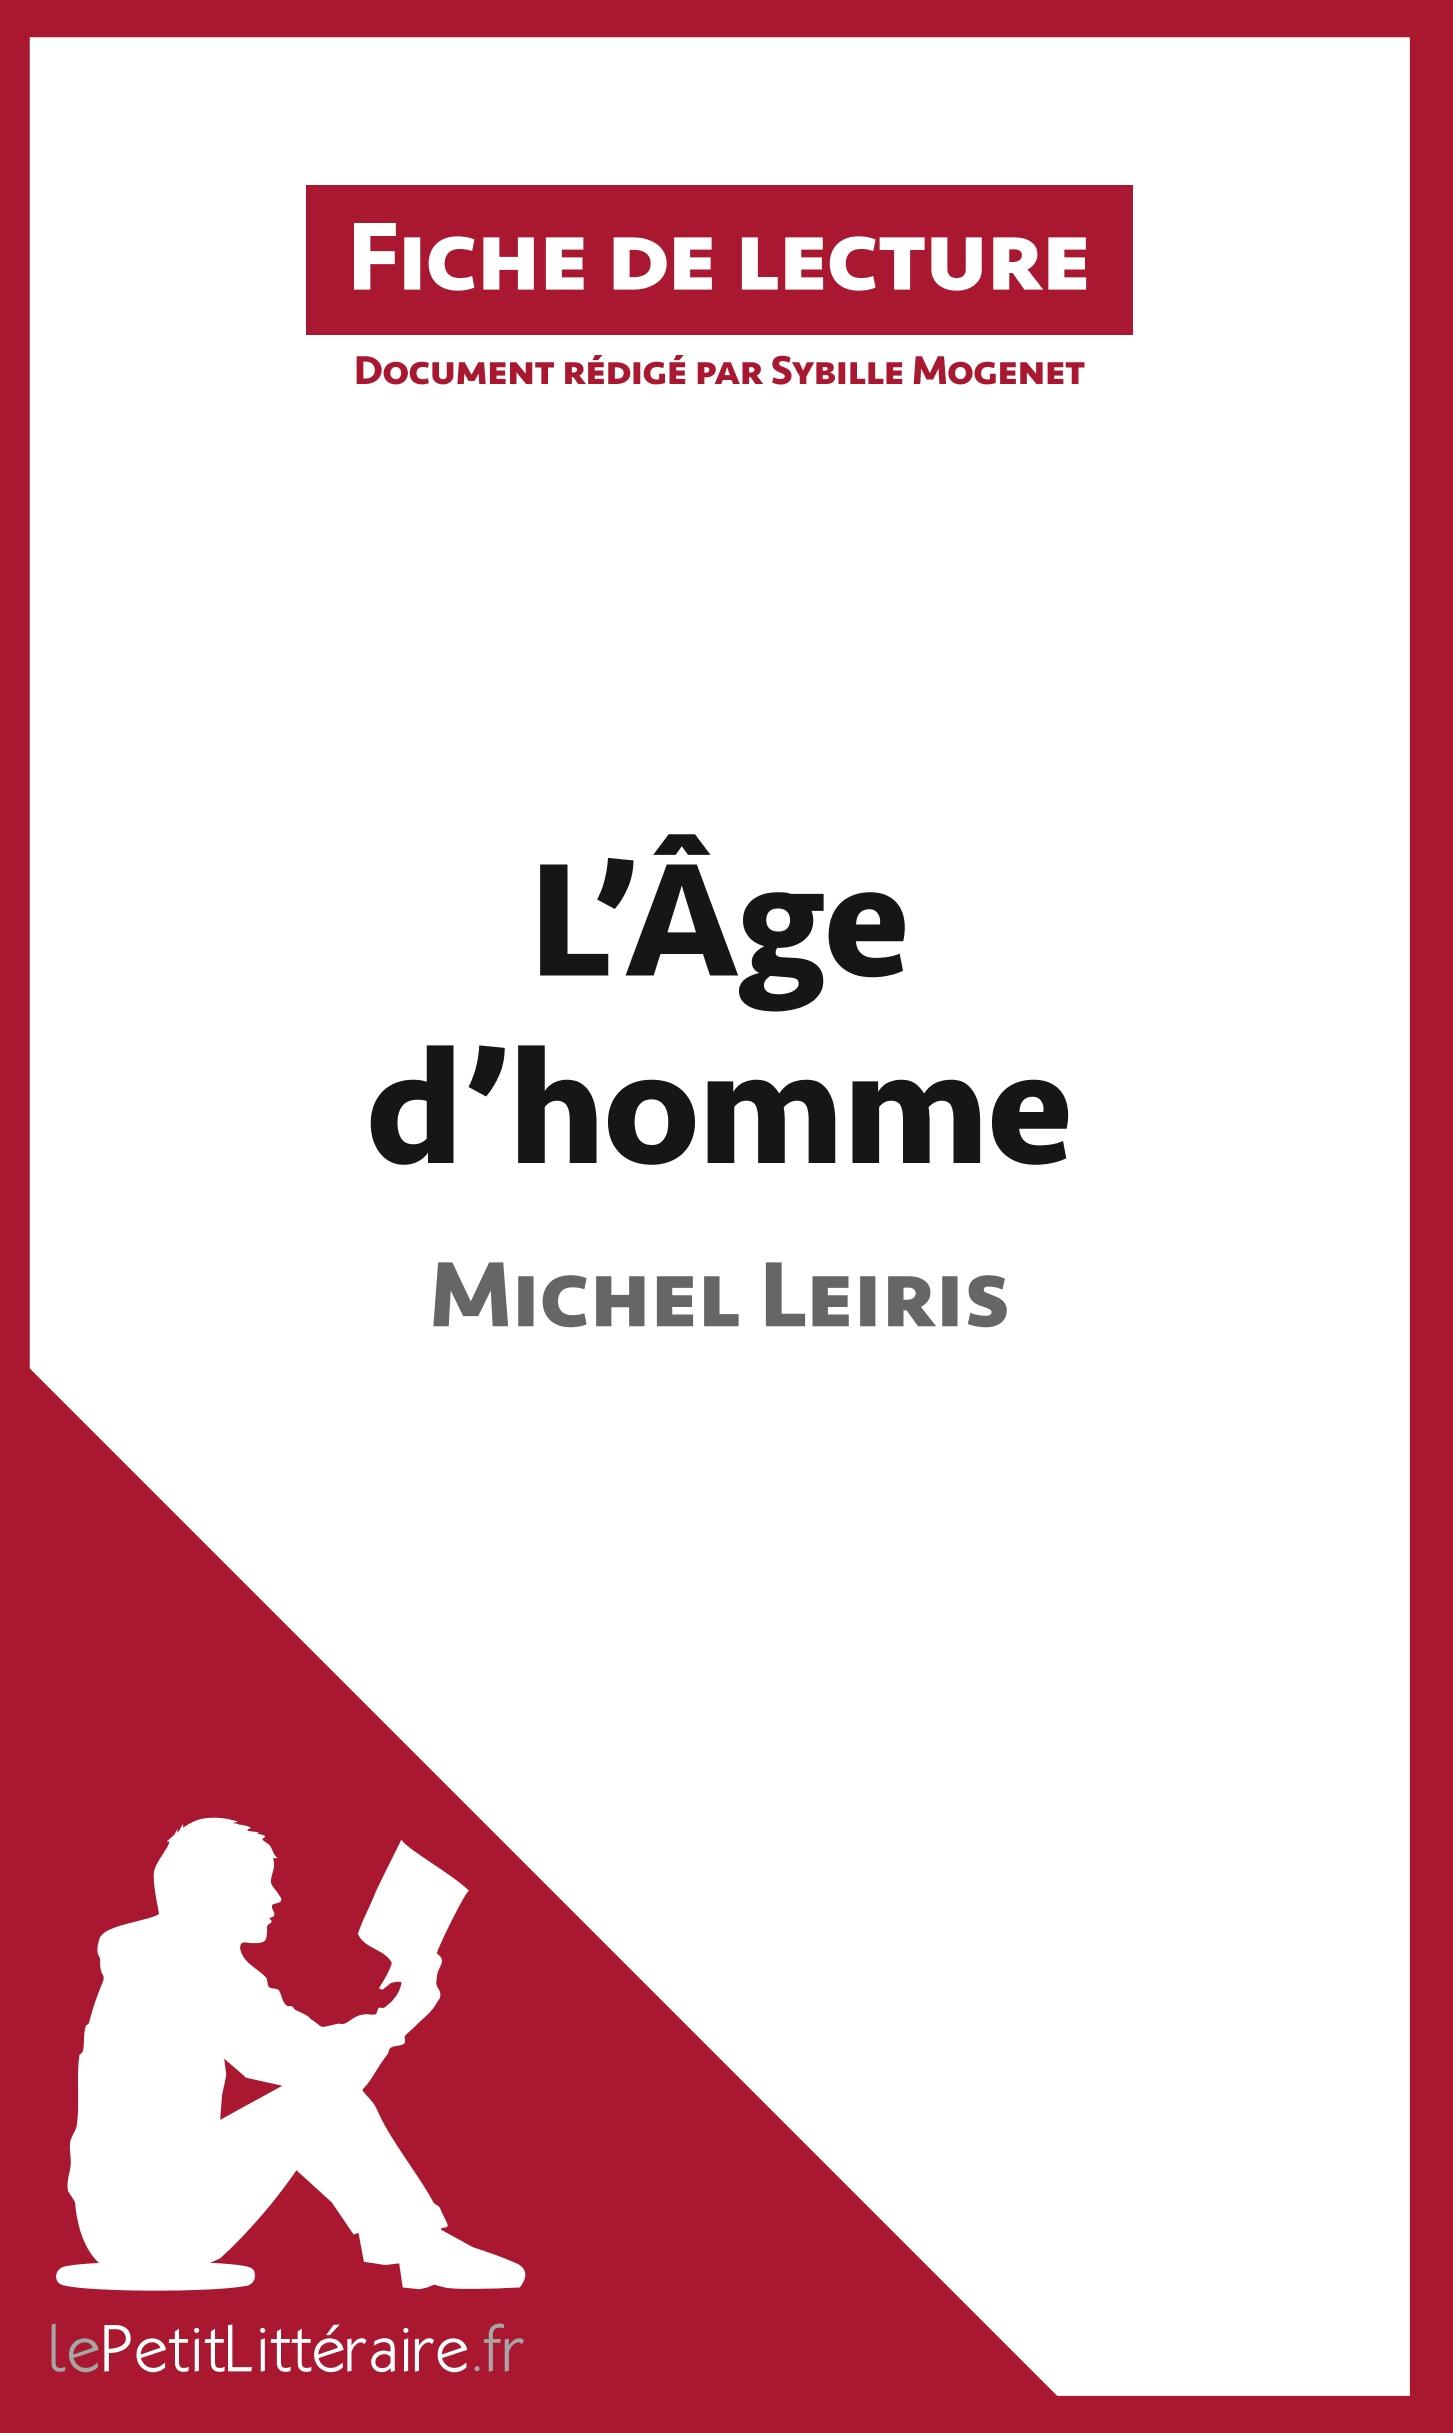 L Âge d homme de Michel Leiris (Fiche de lecture) - Mogenet, Sybille